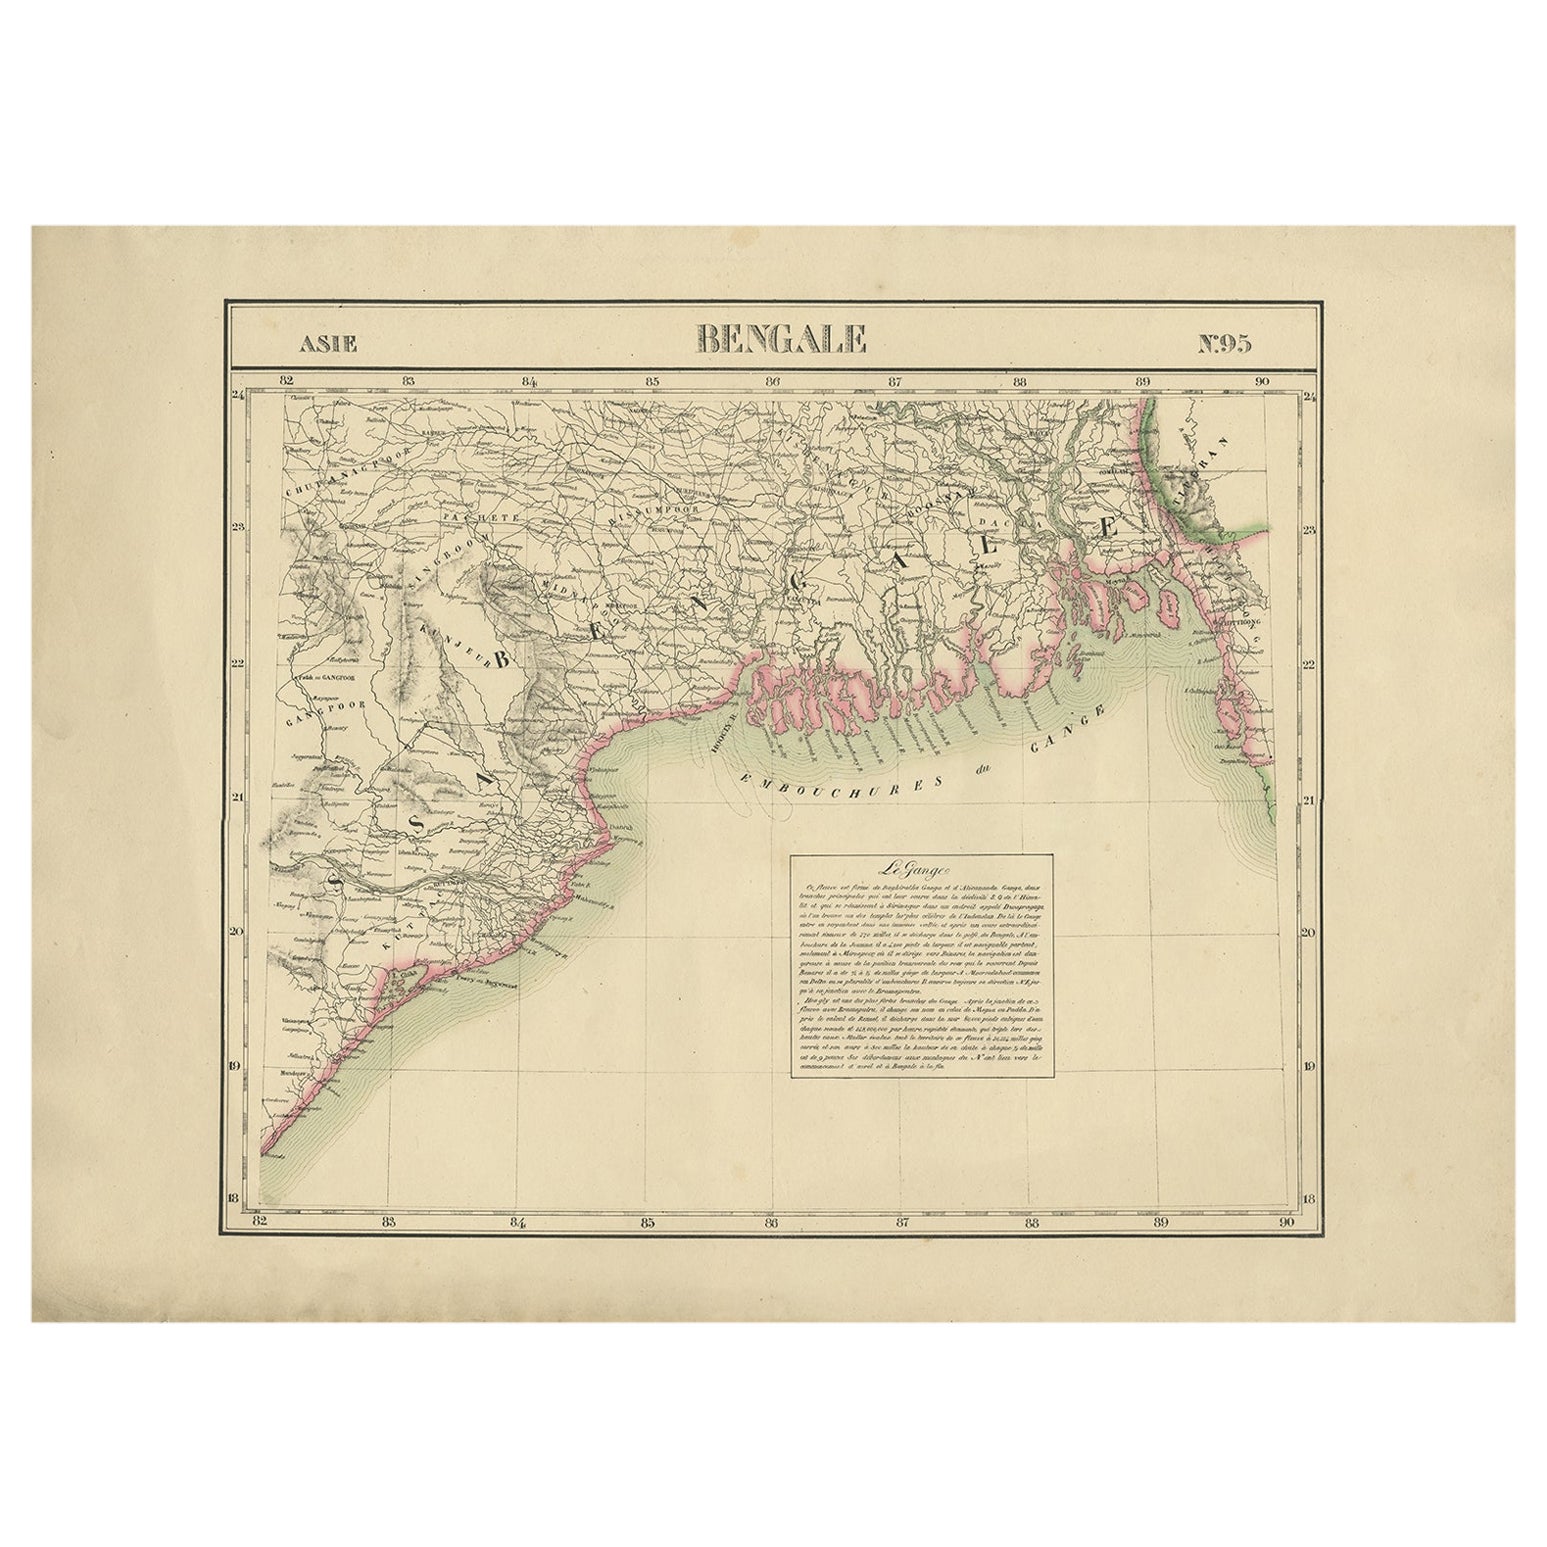 Detaillierte Orginische antike Karte von Bengalen, Indien, um 1825